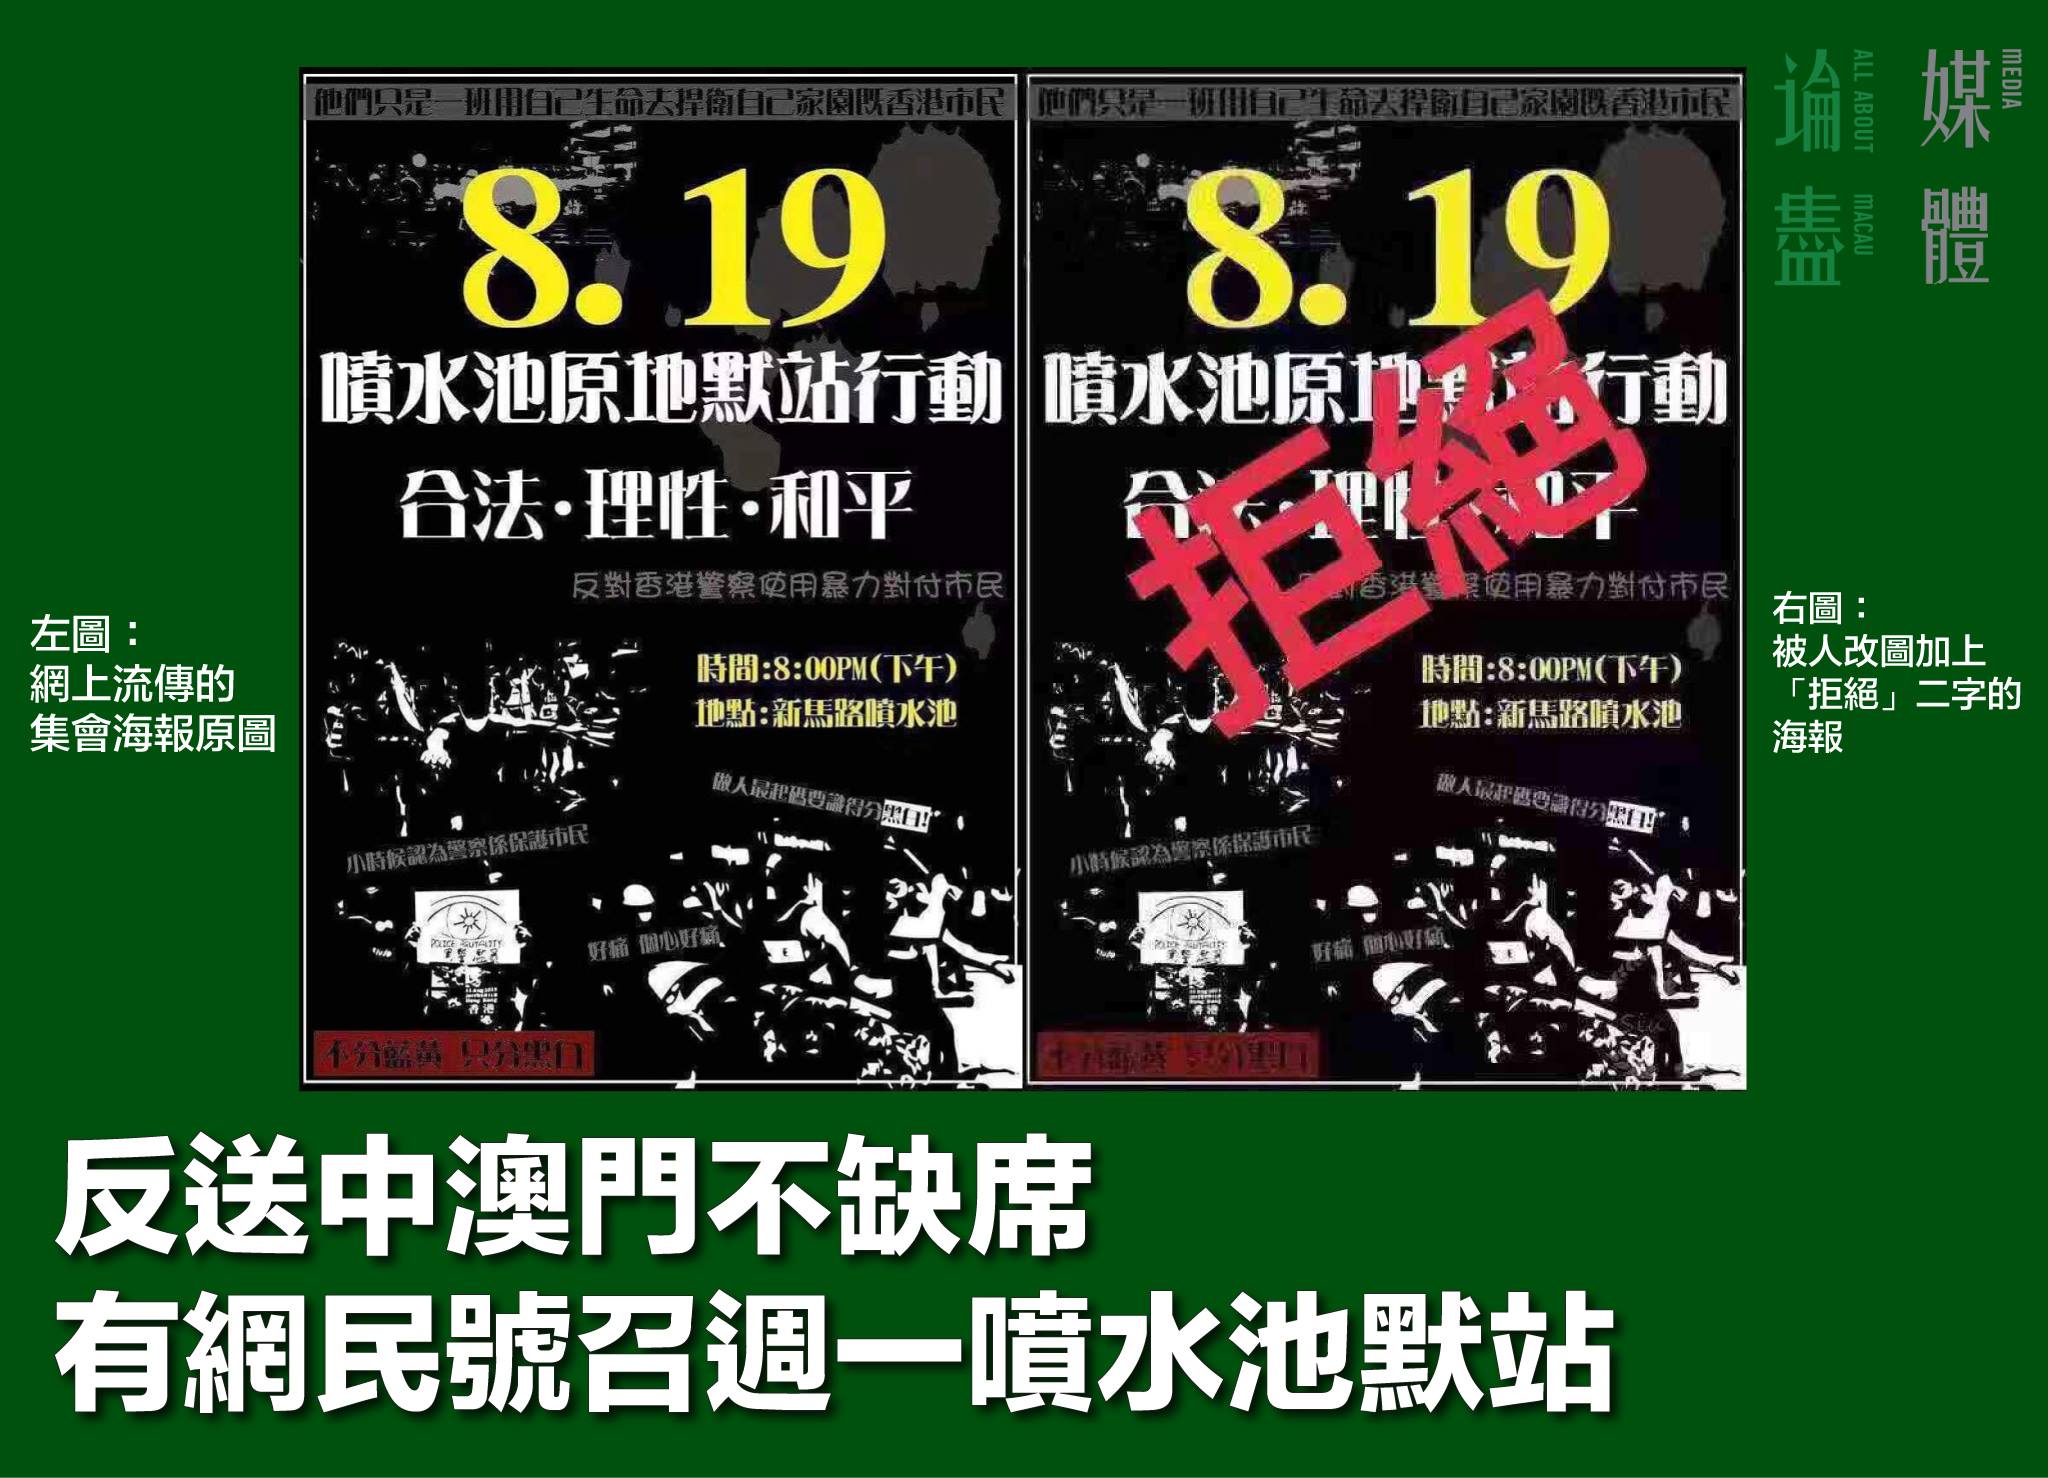 PSP recusa vigília contra a violência policial em Hong Kong